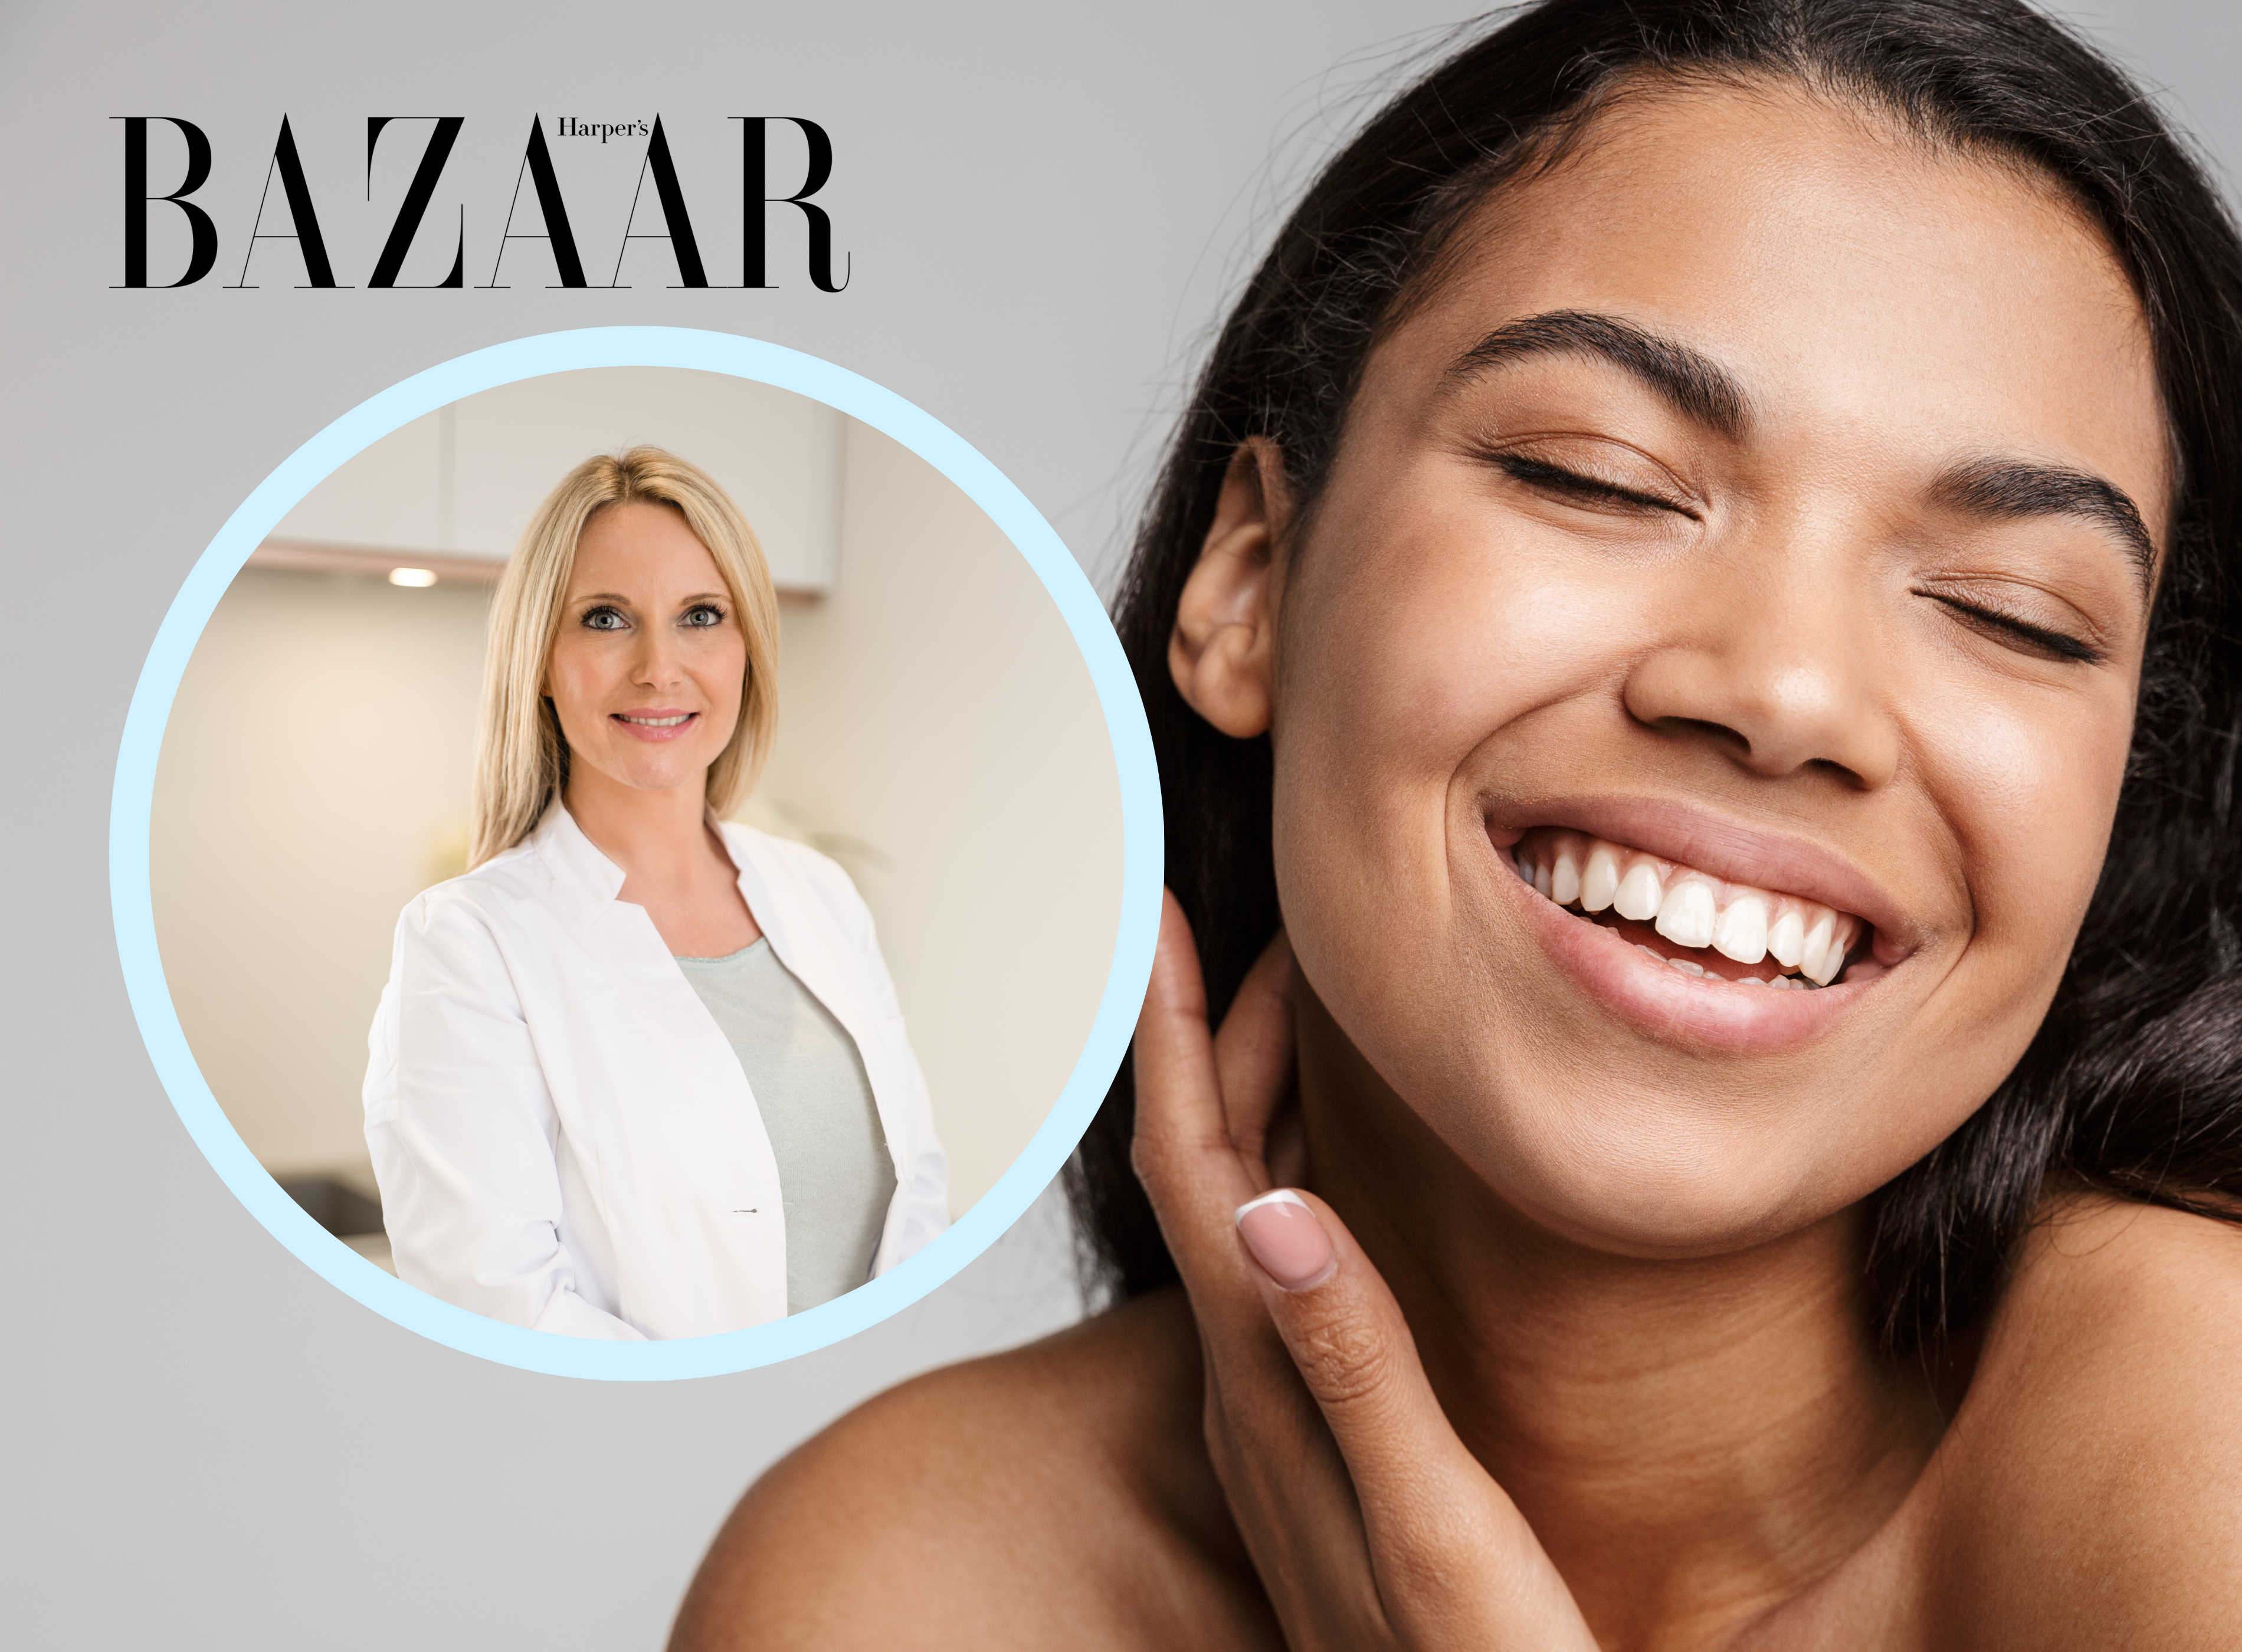 Dr Ward's Skin School with Harper's Bazaar